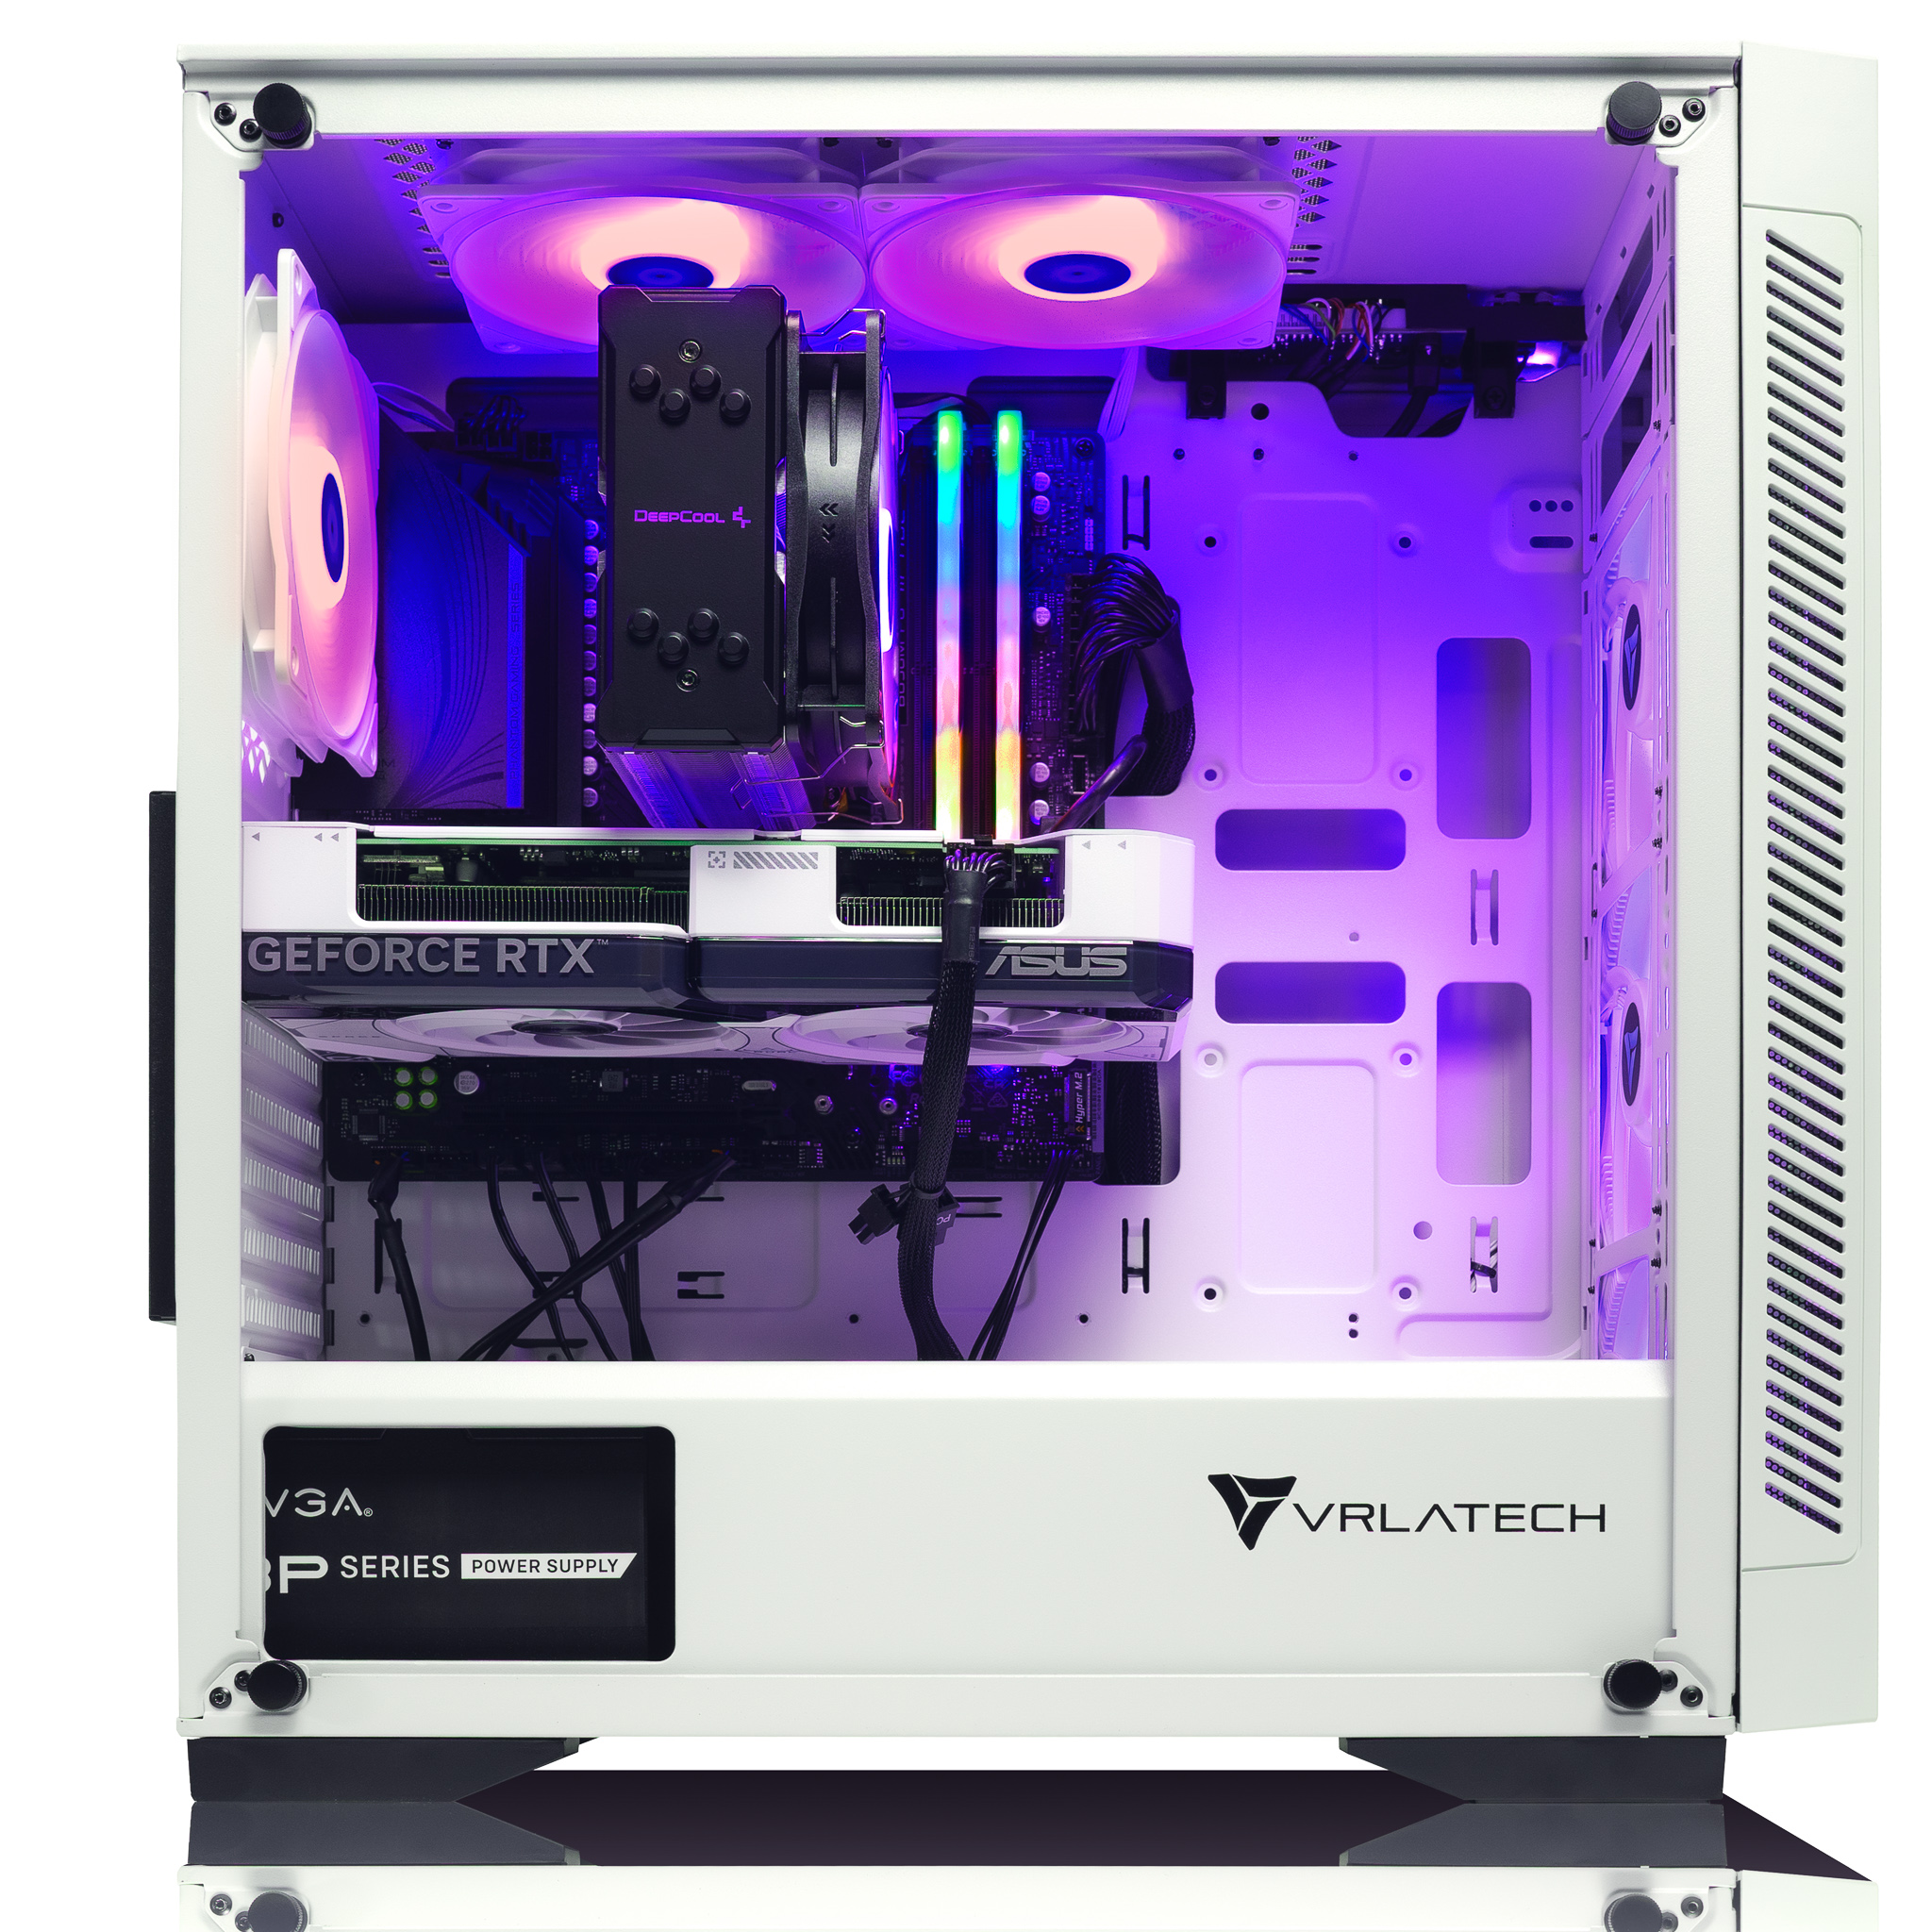 VRLA Tech Titan Gaming PC Side- White